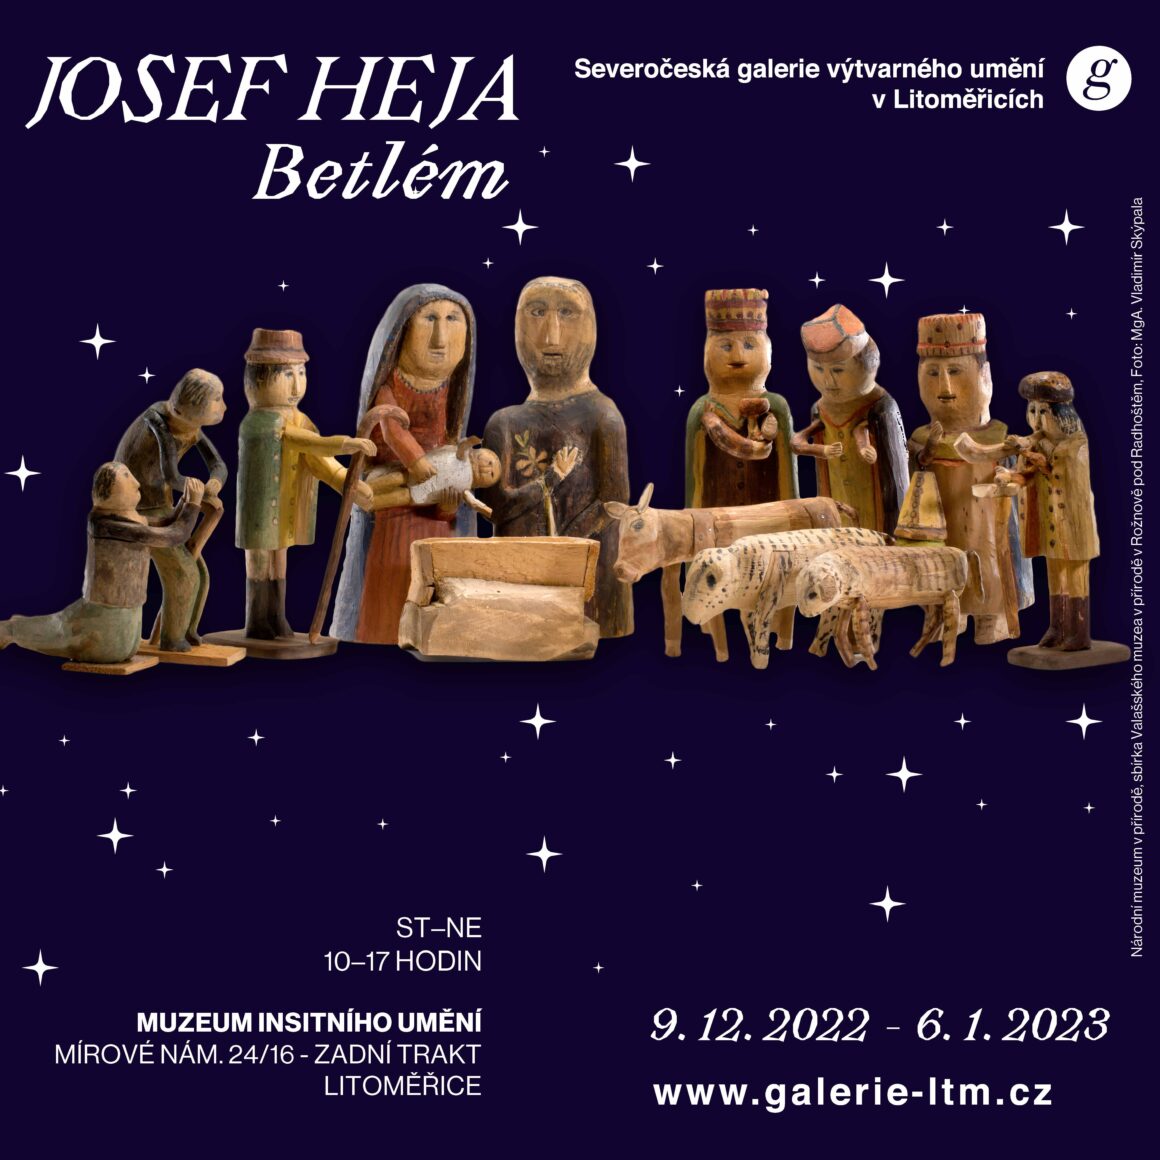 Slavnostní přivítání betléma Josefa Heji v Muzeu insitního umění